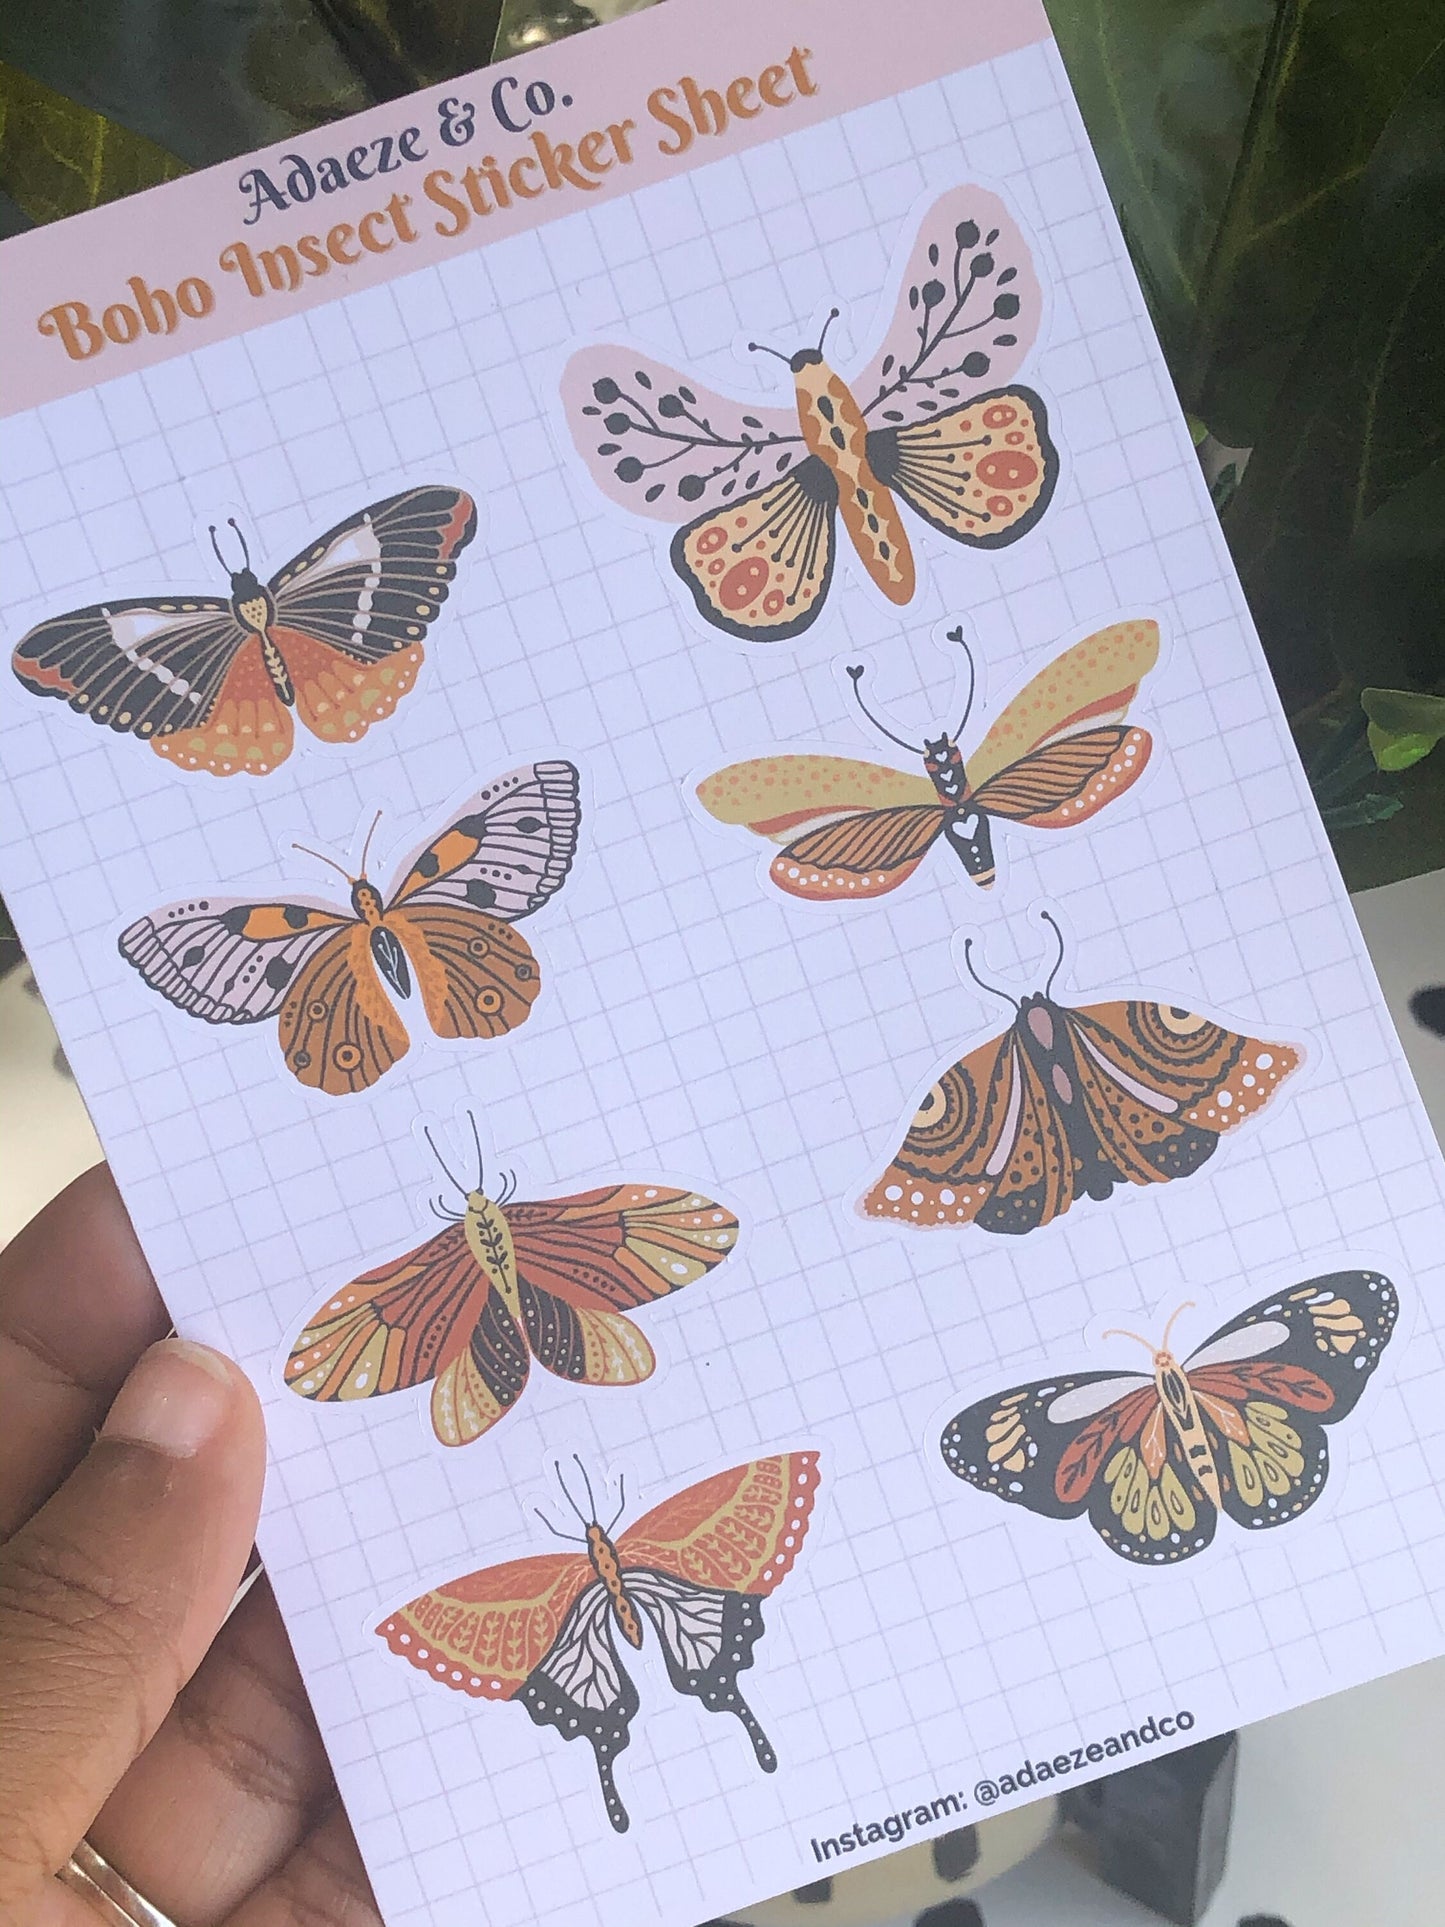 "Boho Butterfly" Sticker Sheet